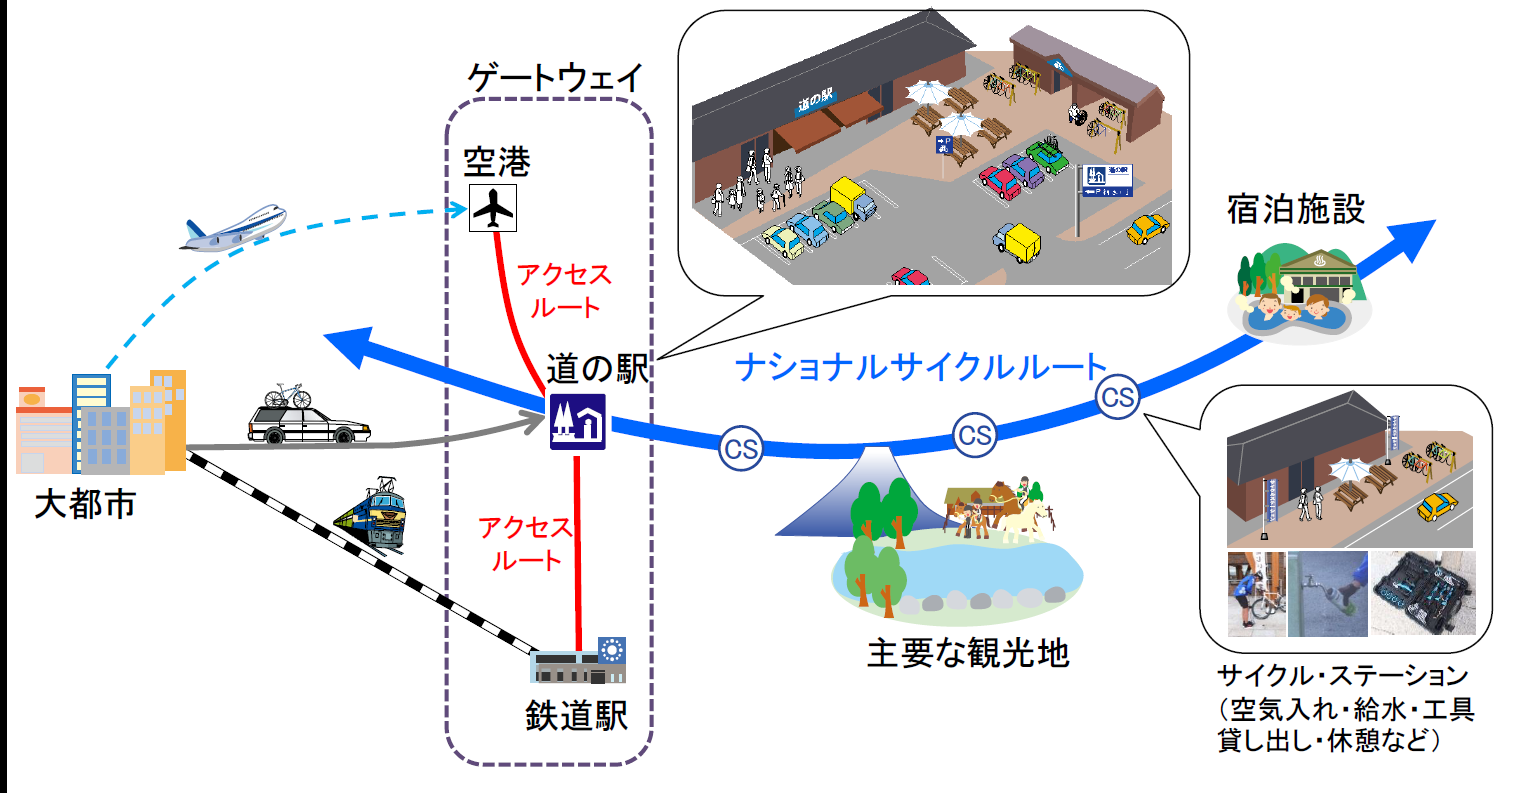 日本を代表するサイクルルートの指定制度、”ナショナルサイクルルート制度”が新たに創設されました！